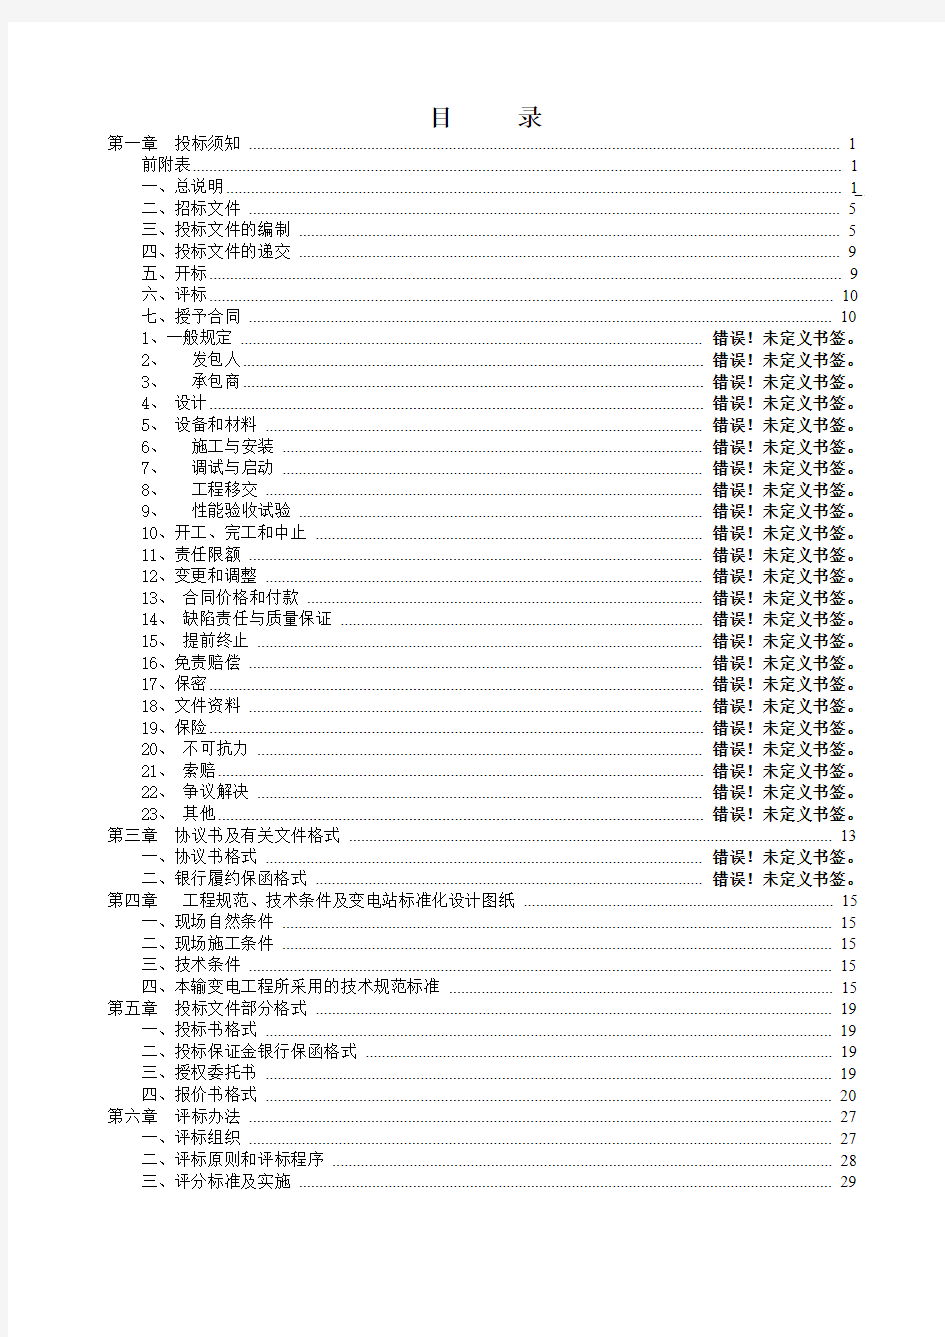 广东电网公司配网总承包招标文件范本(2010)